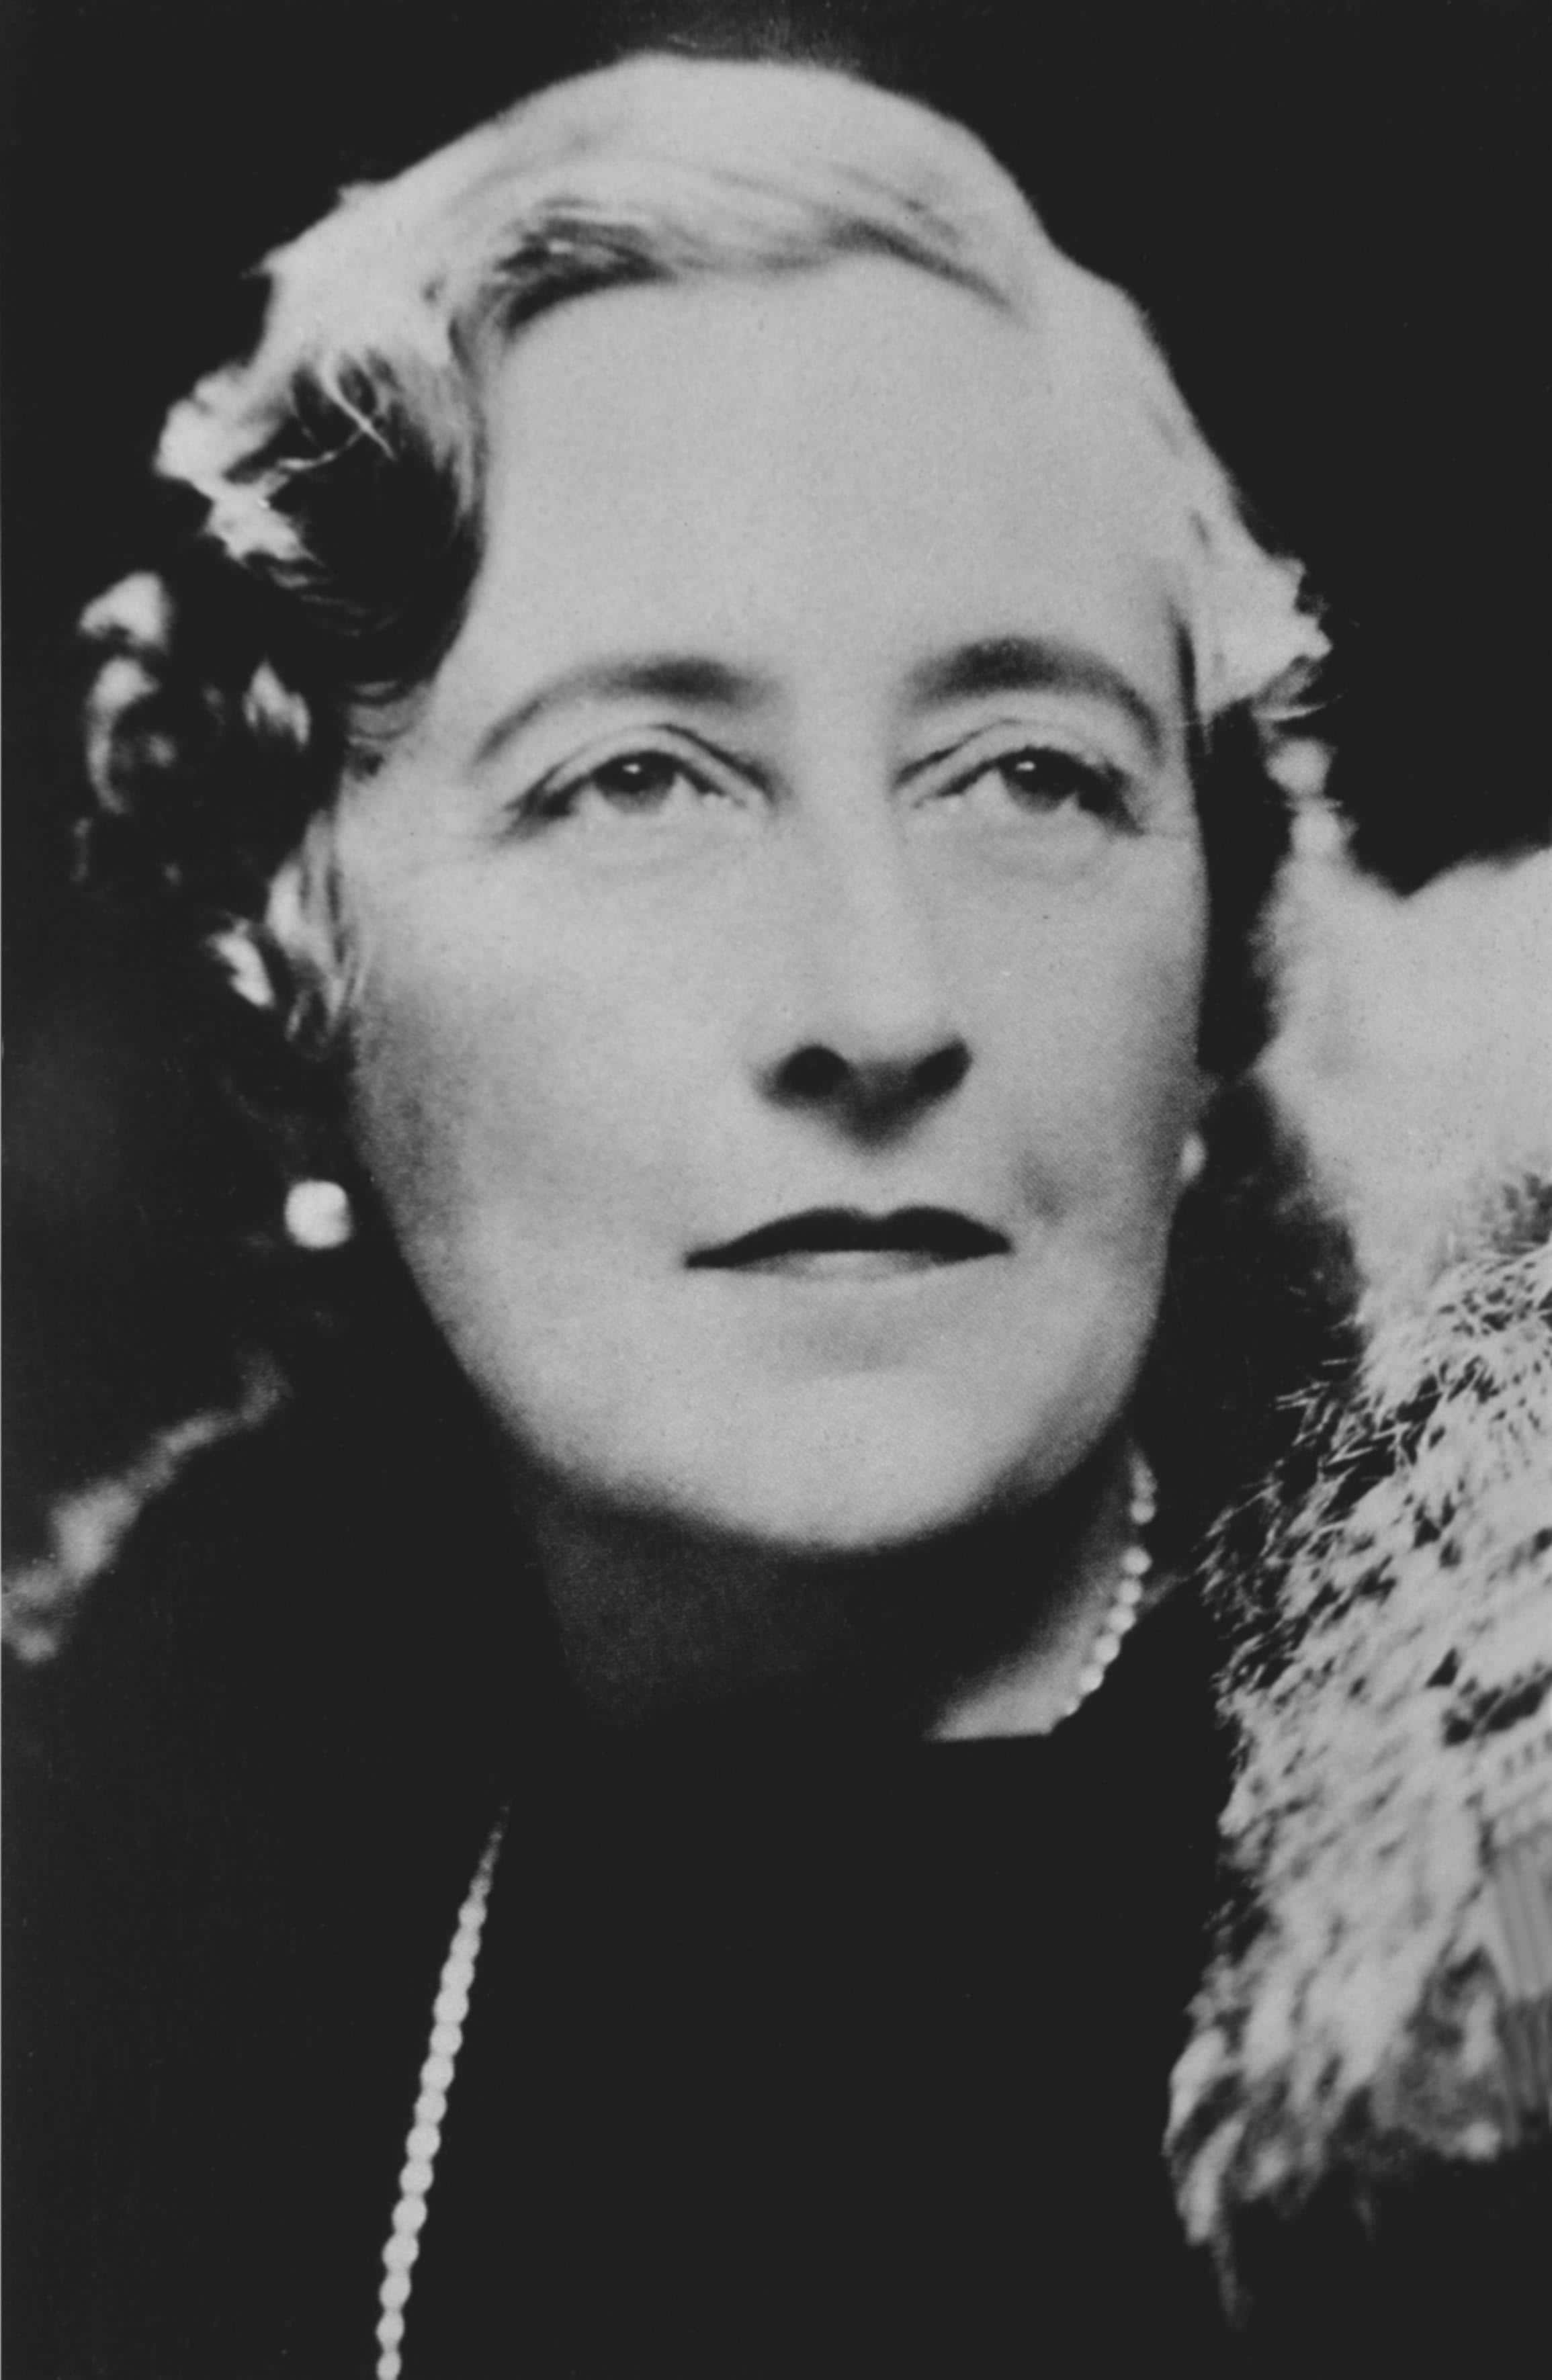 Agatha Christie prima di mettersi alla macchina da scrivere ragionava sulle sue storie dentro la vasca da bagno.